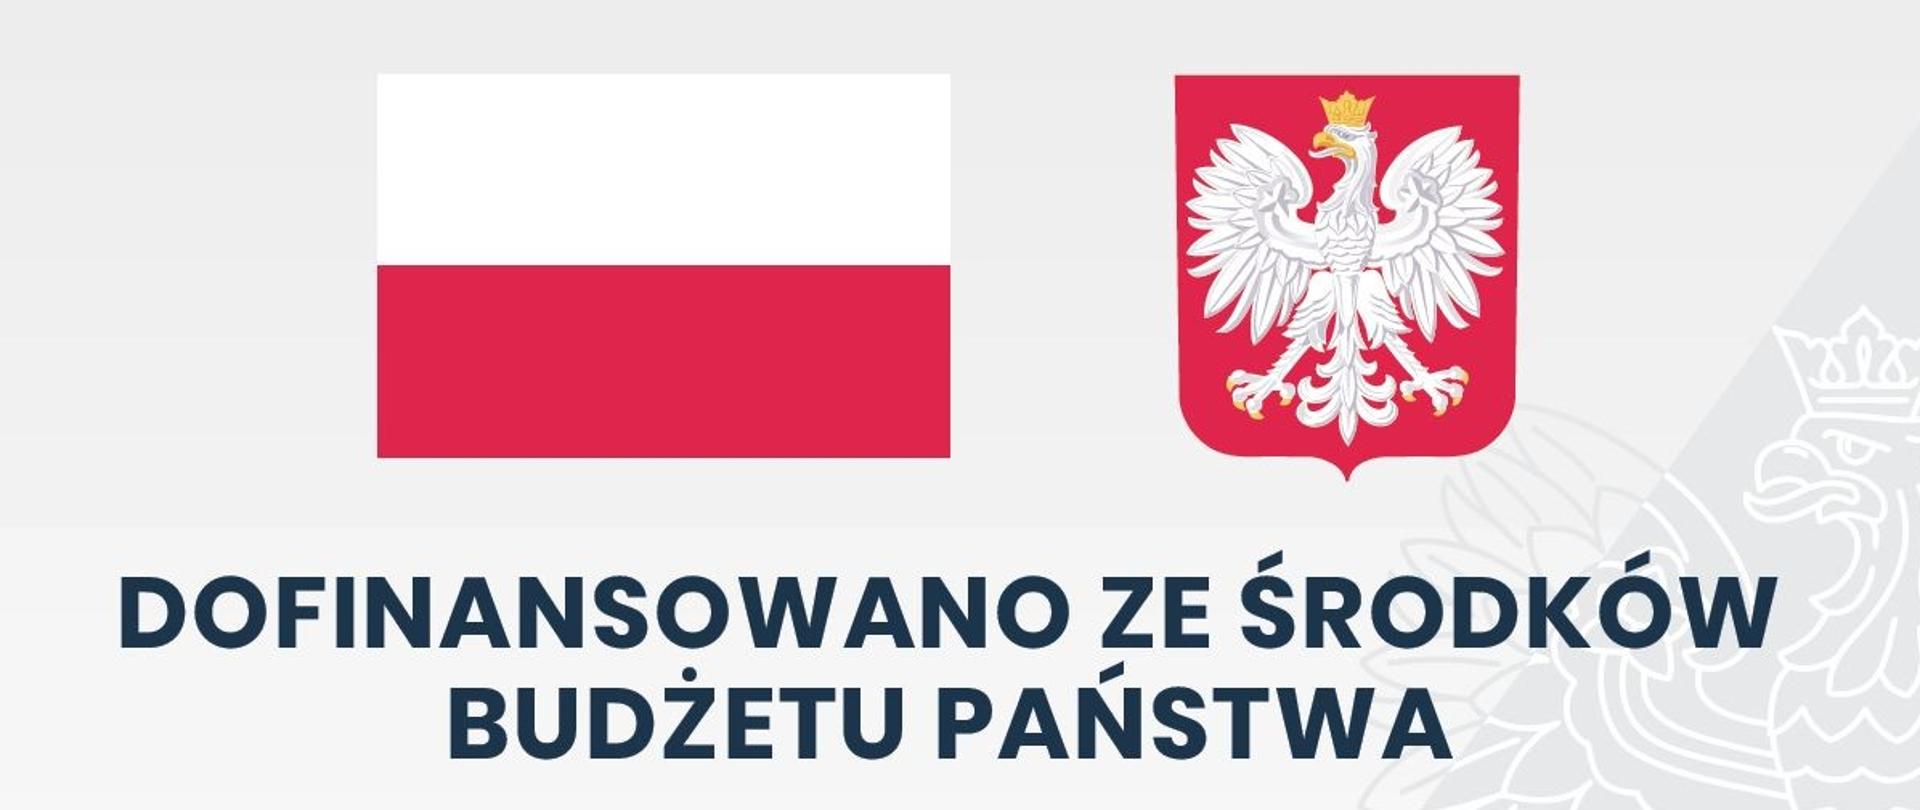 Flaga i godło Polski na szarym tle z zarysem orła białego w koronie, napis Dofinansowano ze środków budżetu państwa